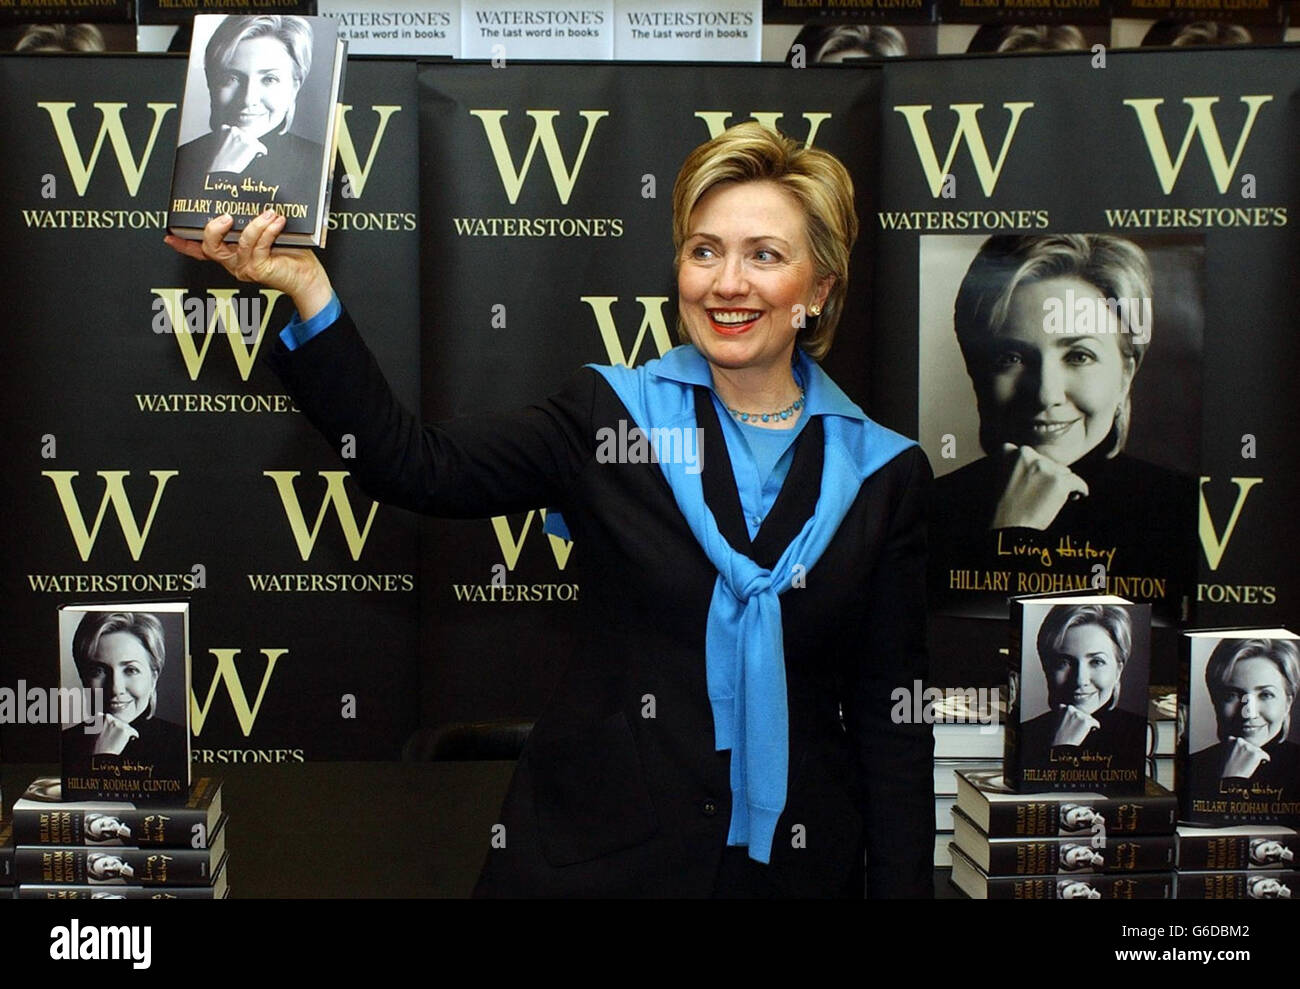 L'ancienne première dame des États-Unis Hillary Clinton détient une copie de son autobiographie « Living History » à la librairie Waterstones de Piccadilly à Londres, au cours d'une session de signature. Maintenant sénateur de New York, Mme Clinton aurait reçu 5 millions d'avance pour le livre. * l'autobiographie est destinée à être le dernier mot de Mme Clinton sur l'affaire Whitewater et Monica Lewinsky, la stagiaire à la Maison Blanche avec laquelle son mari Bill a eu une affaire. Banque D'Images